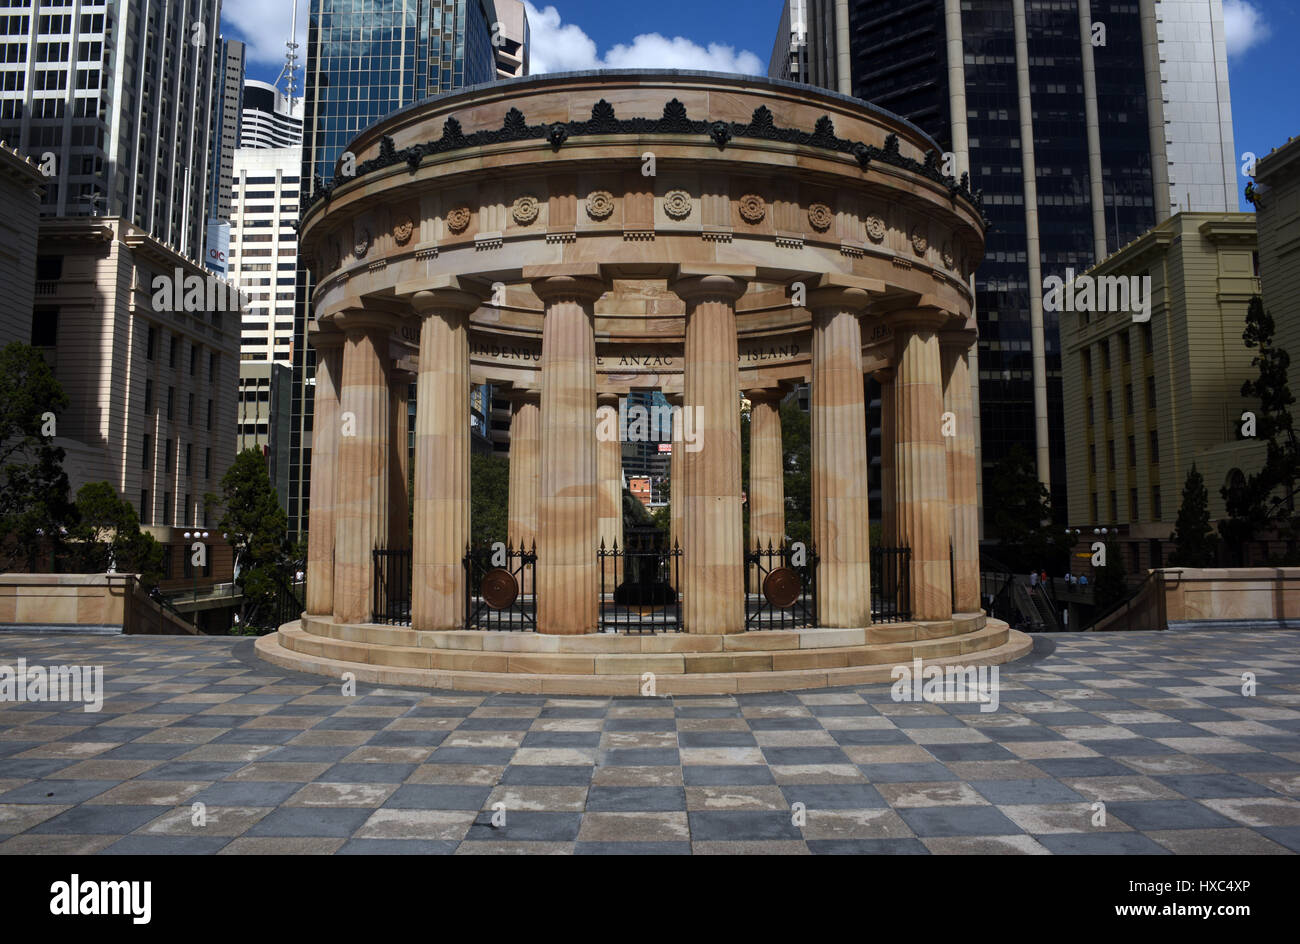 Brisbane, Australien: Schrein des Remembance war Memorial in Anzac Square, die ewige Flamme. Stockfoto